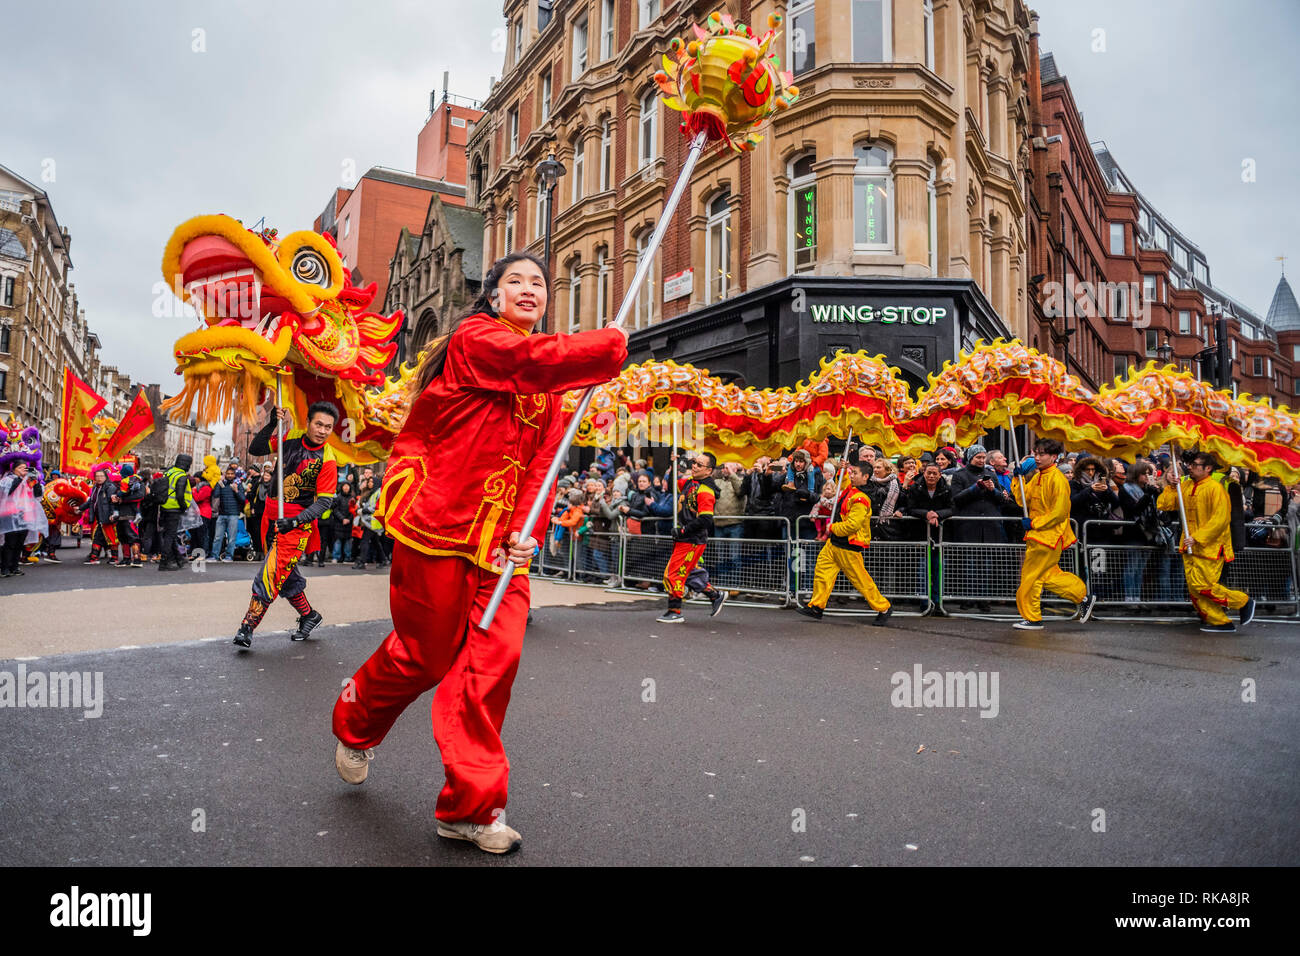 Lion Tänzer und Kinder in Kostümen Parade um die Ränder von Chinatown und Soho. Das chinesische Neujahr feiern in Soho, London. Stockfoto